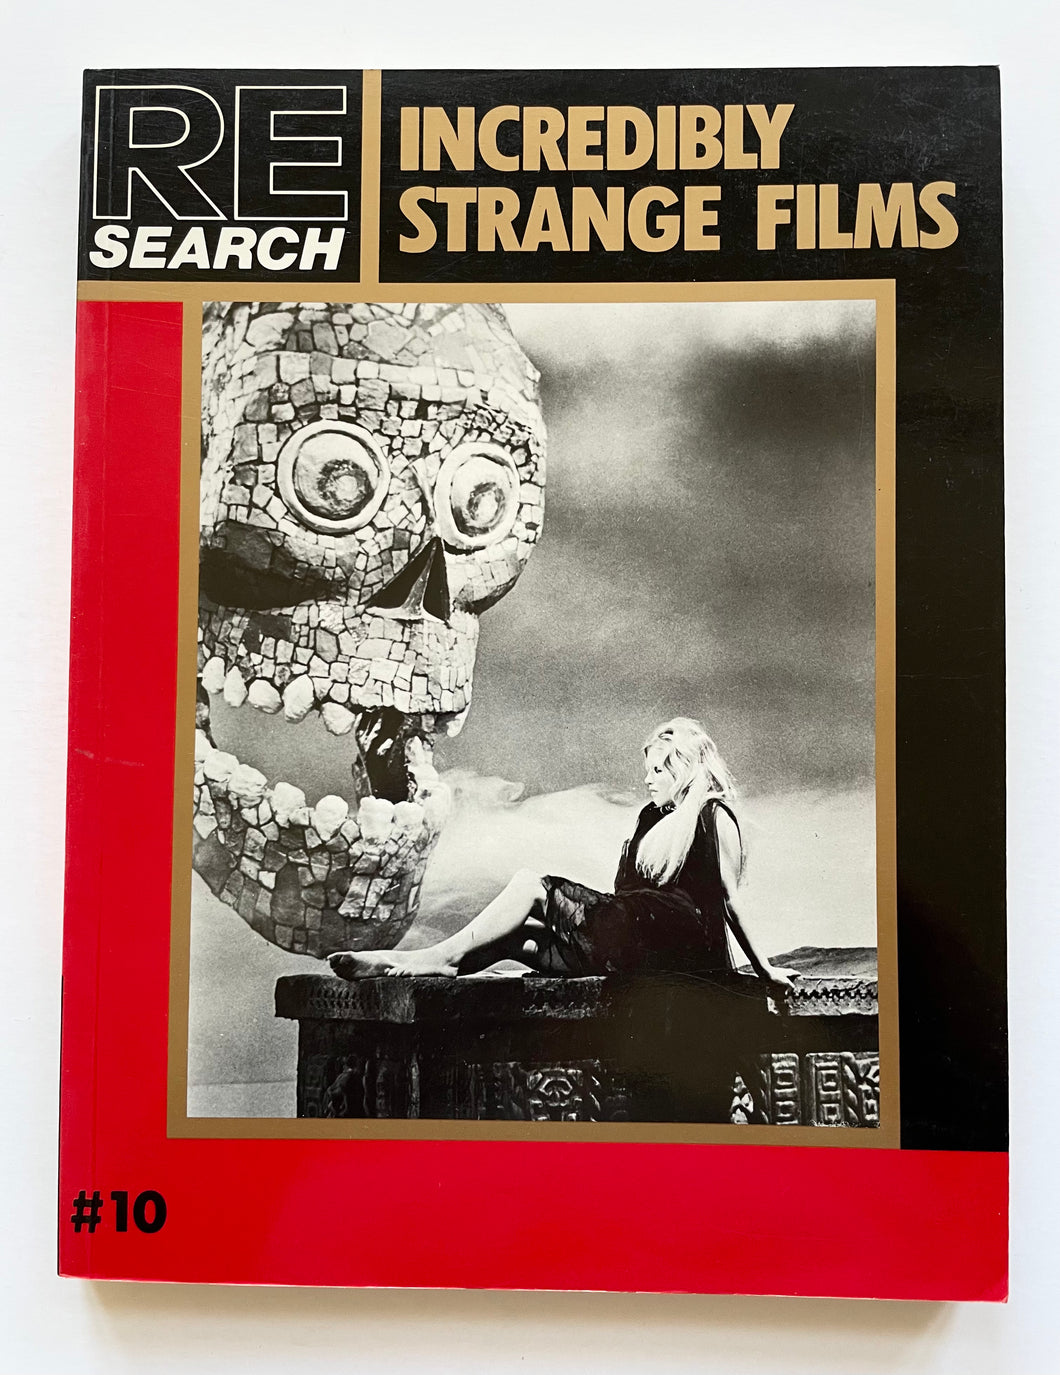 Incredibly Strange films | V. Vale (Re:Search)